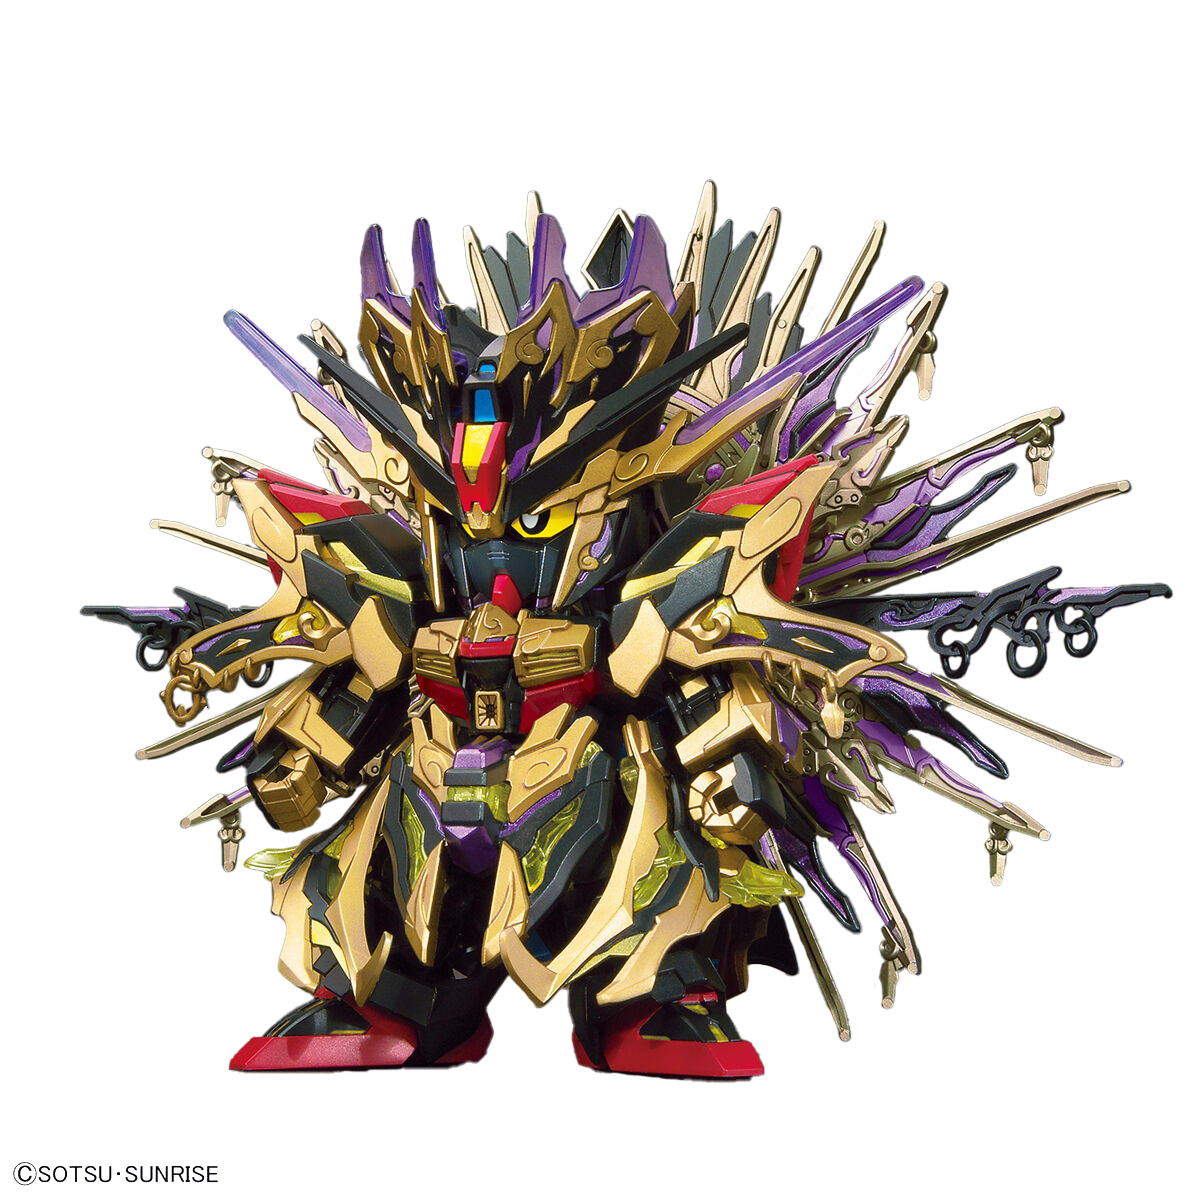 Picture of Bandai BAN2568804 No.14 Qiongqi Strike Freedom Gundam SDW Heroes Bandai Figures